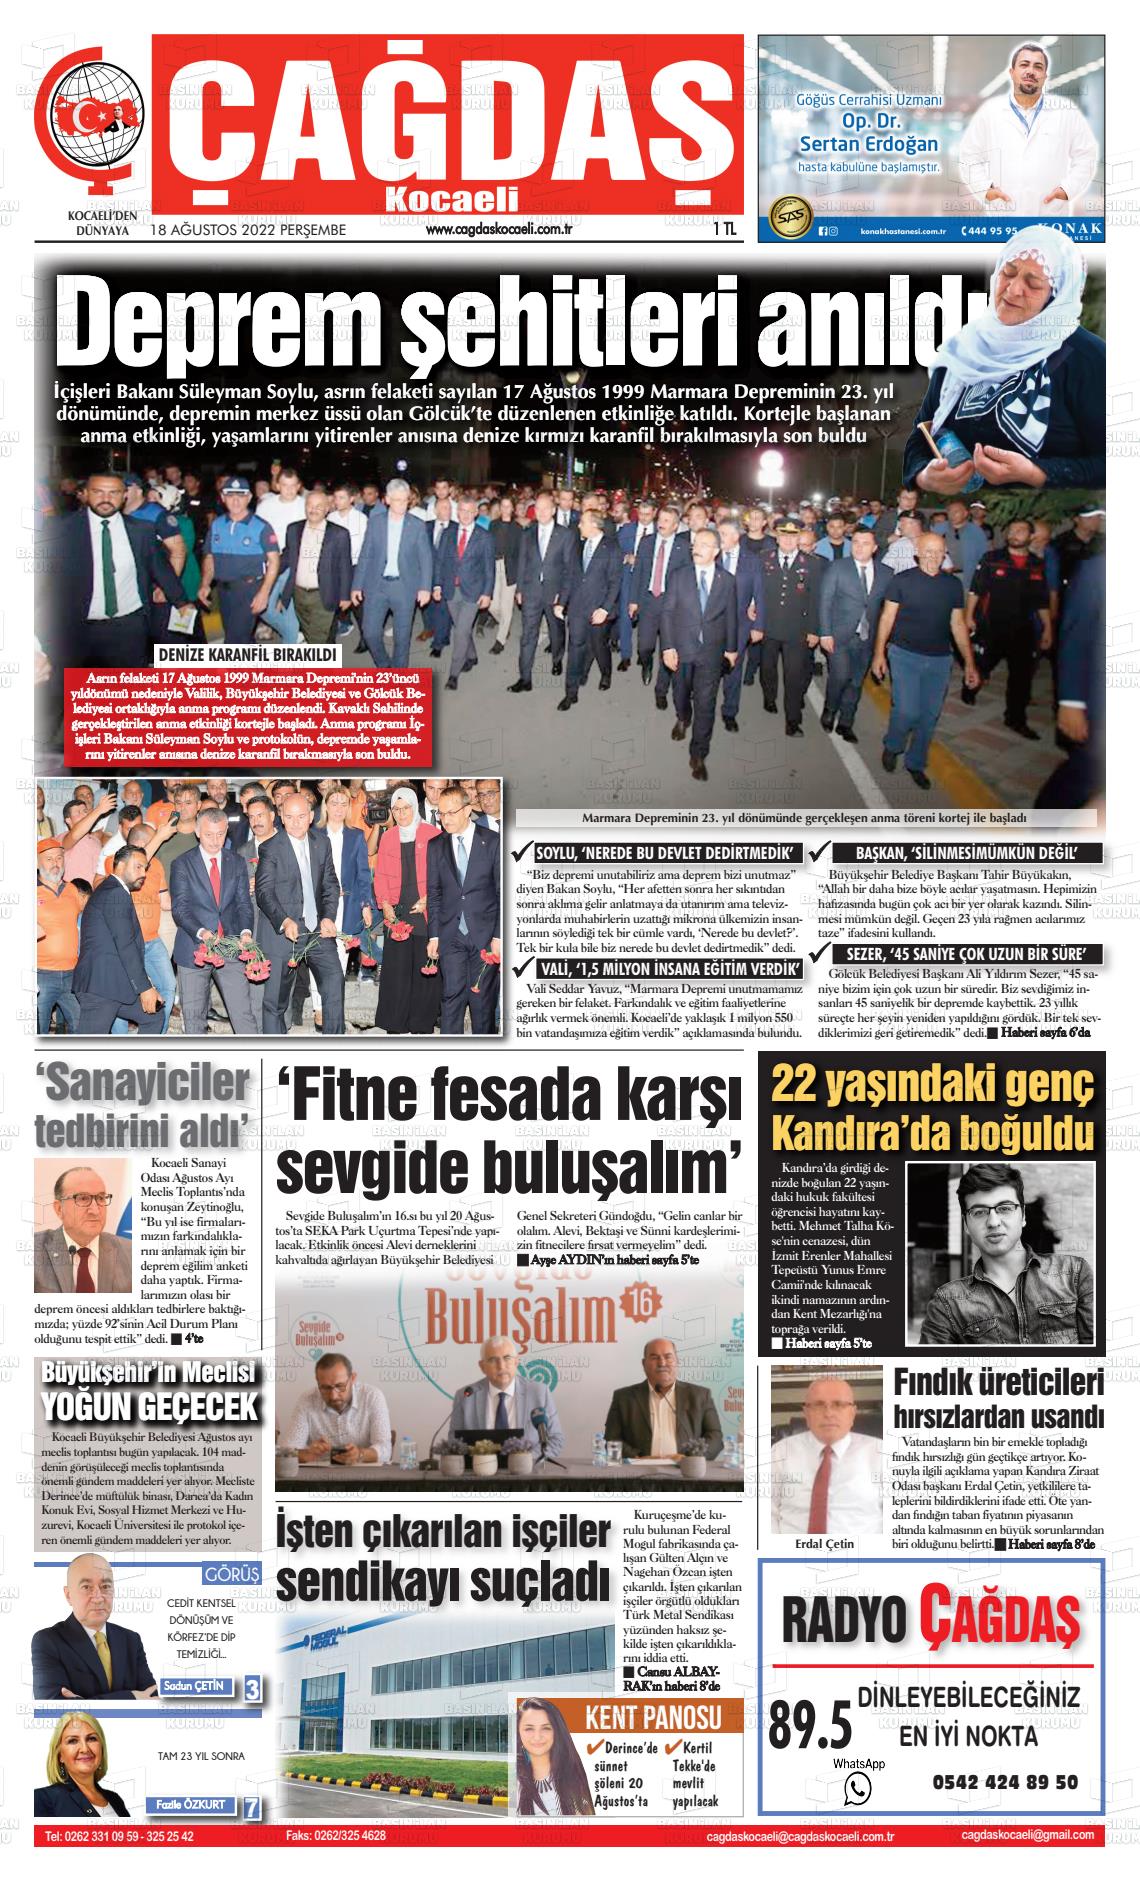 18 Ağustos 2022 Çağdaş Kocaeli Gazete Manşeti